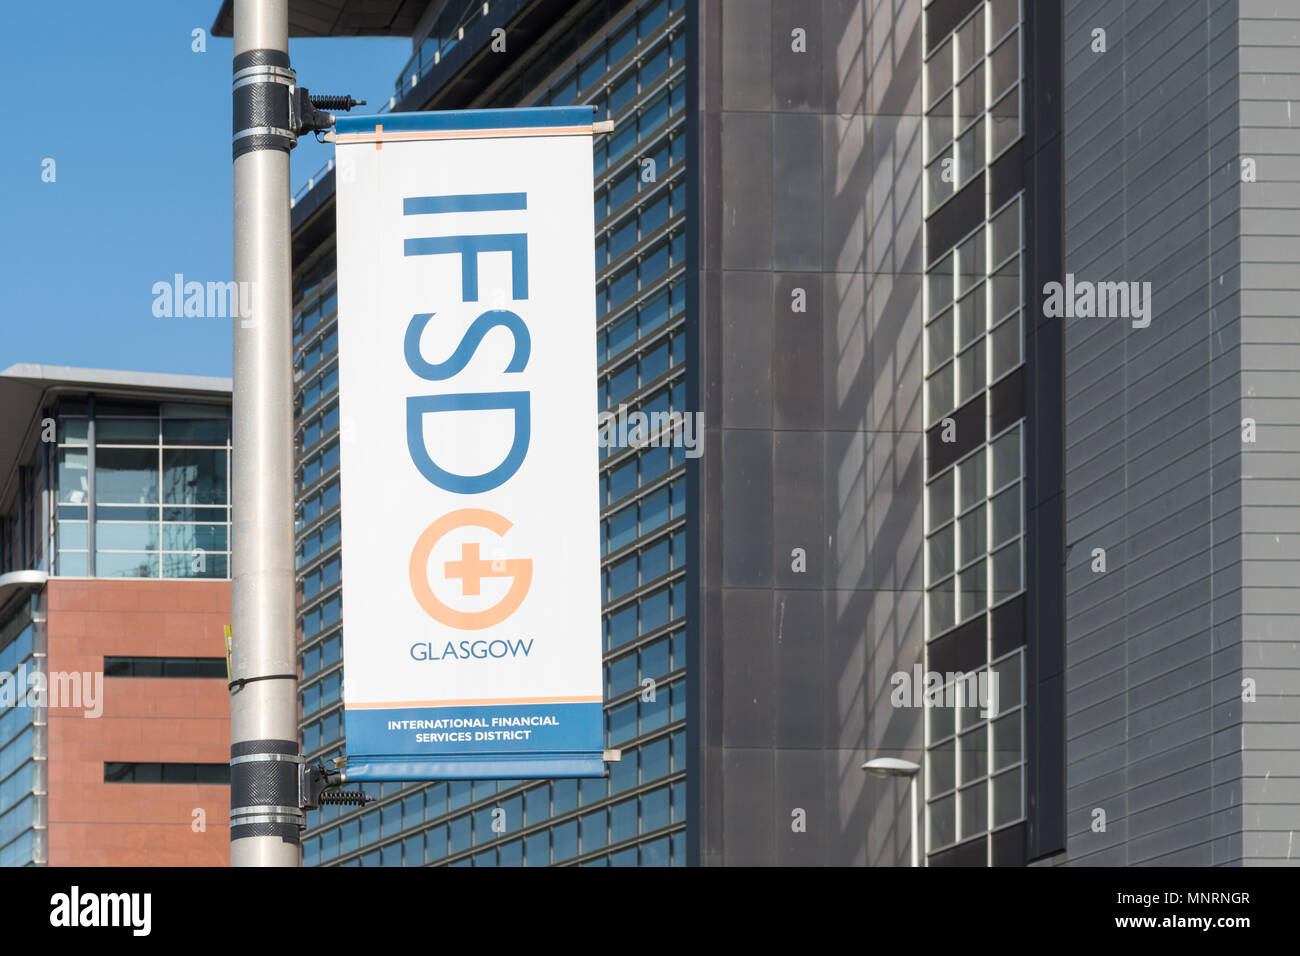 Le CIDD Glasgow - International Financial Services District - bannière, Ecosse, Royaume-Uni Banque D'Images